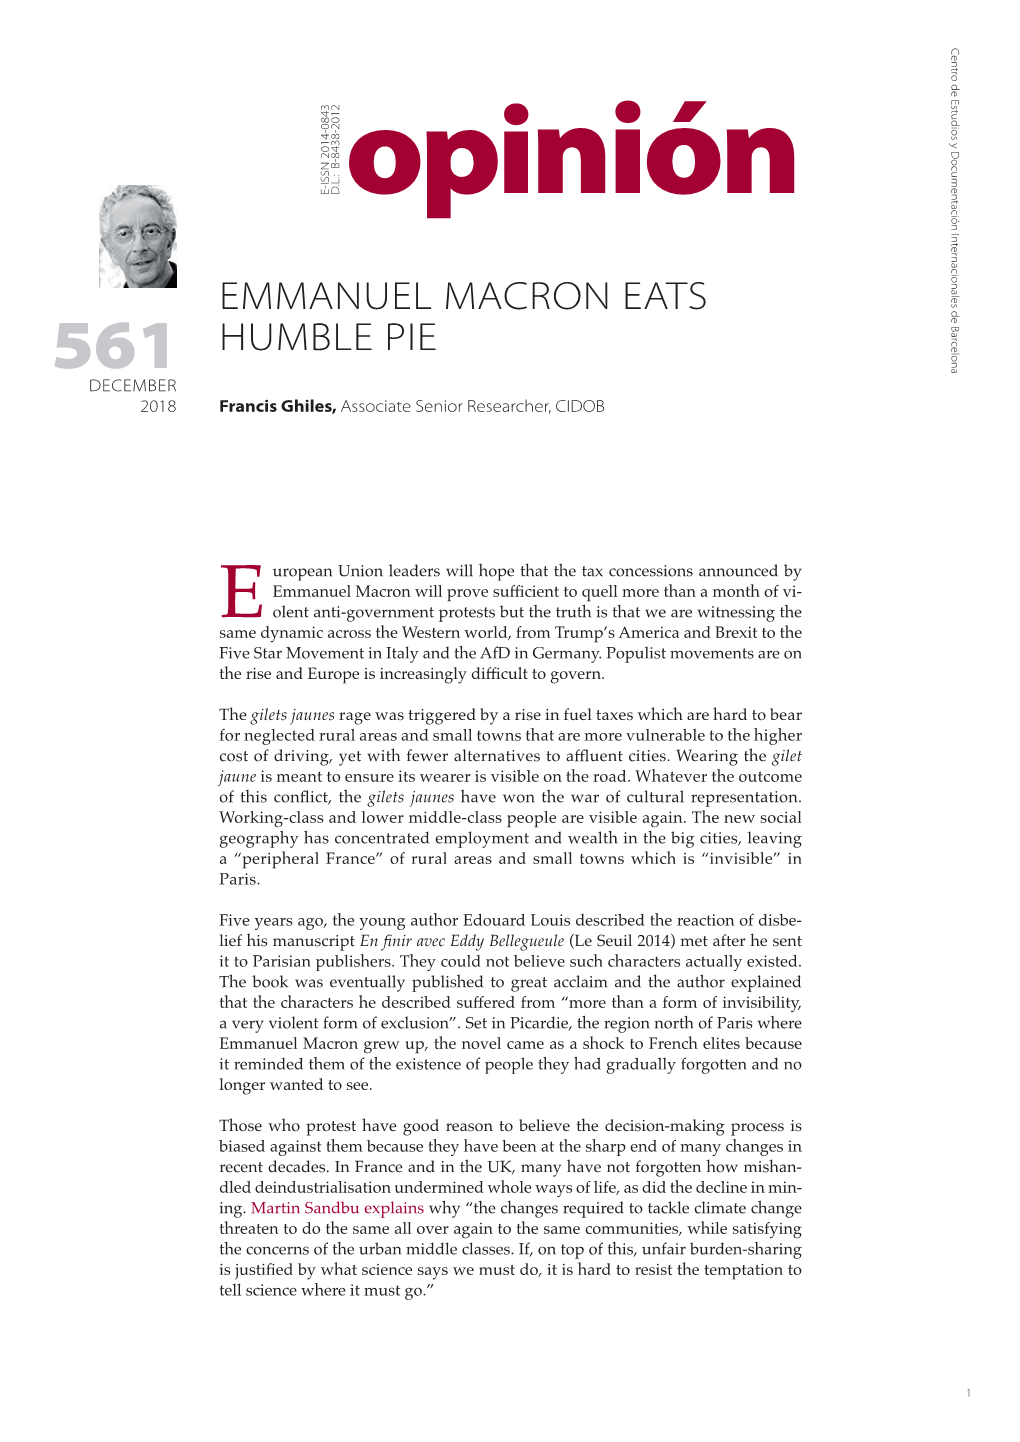 Emmanuel Macron Eats Humble